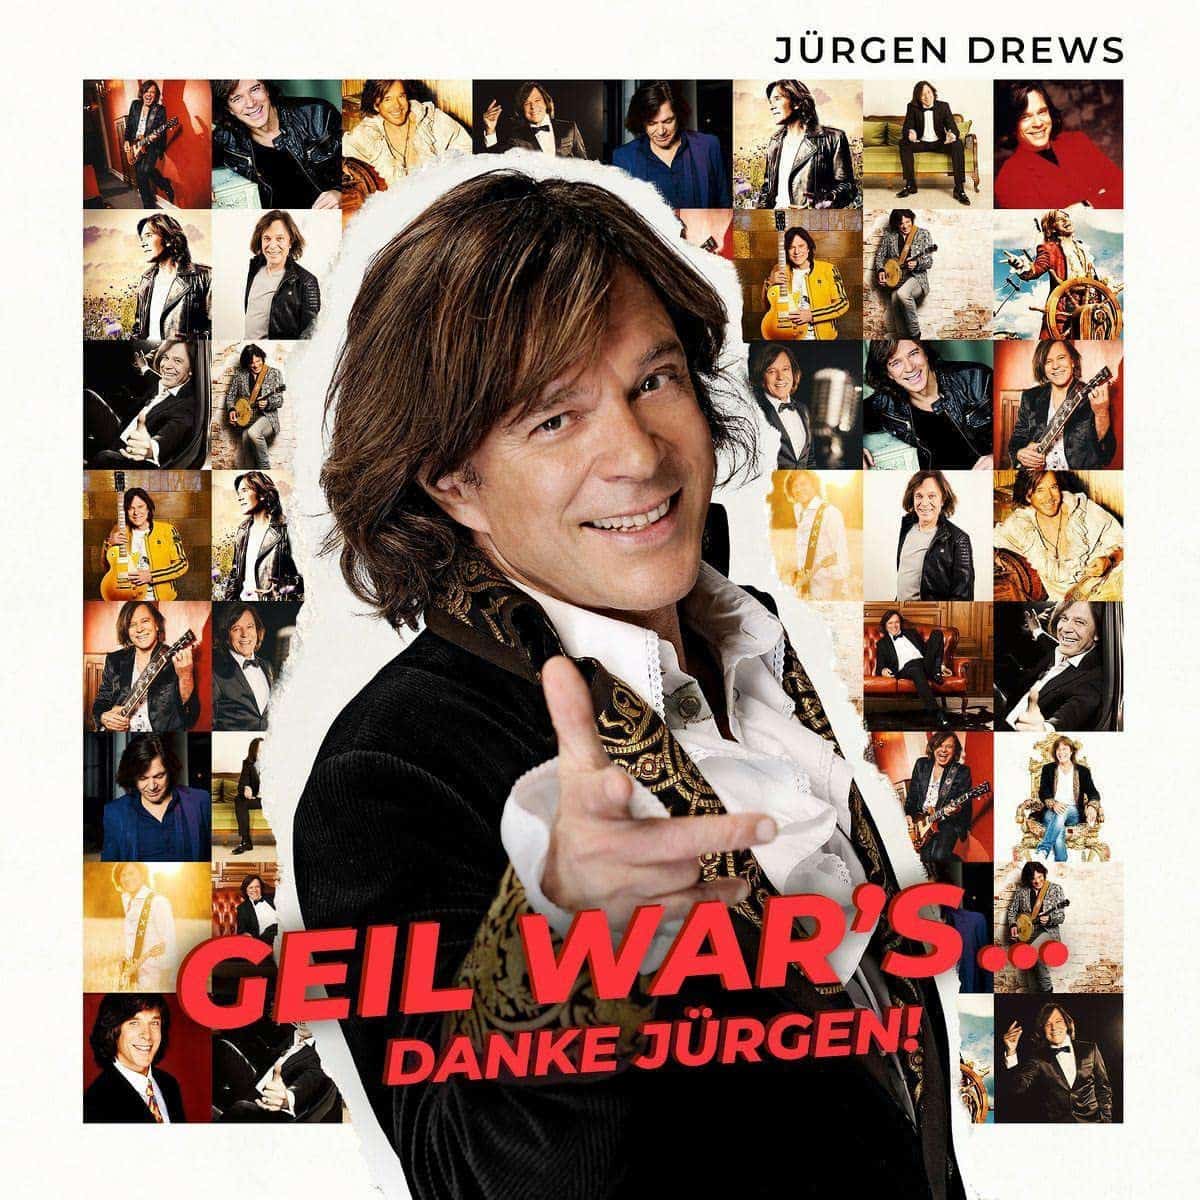 Jürgen Drews - CD 2023 “Geil war's... Danke, Jürgen!” veröffentlicht - hier im Bild das CD-Cover der neuen Jürgen-Drews-CD